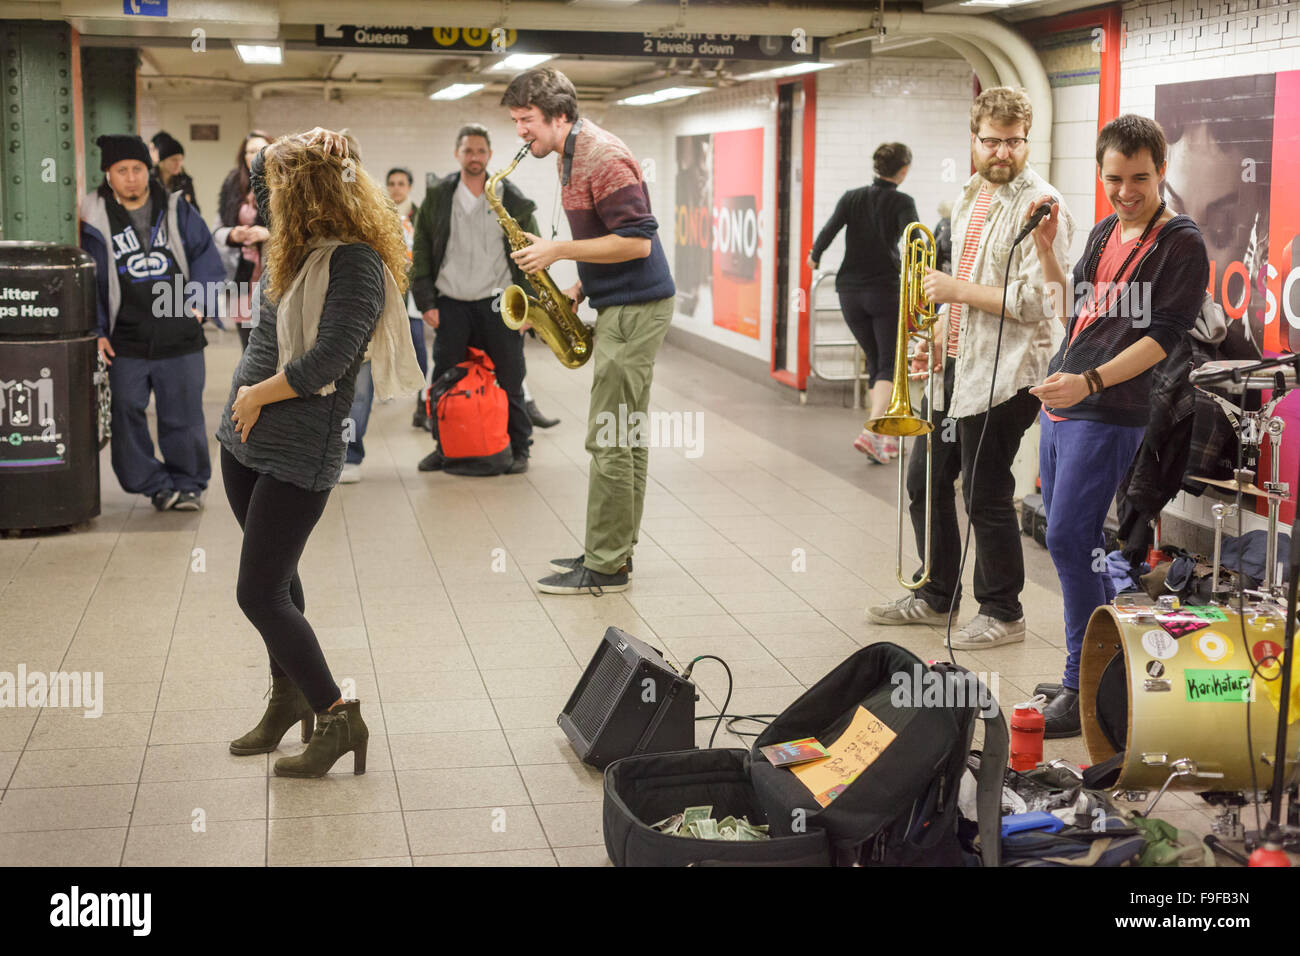 Musiciens et danseuse à l'exécution d'un arrêt de métro,New York City, USA Banque D'Images